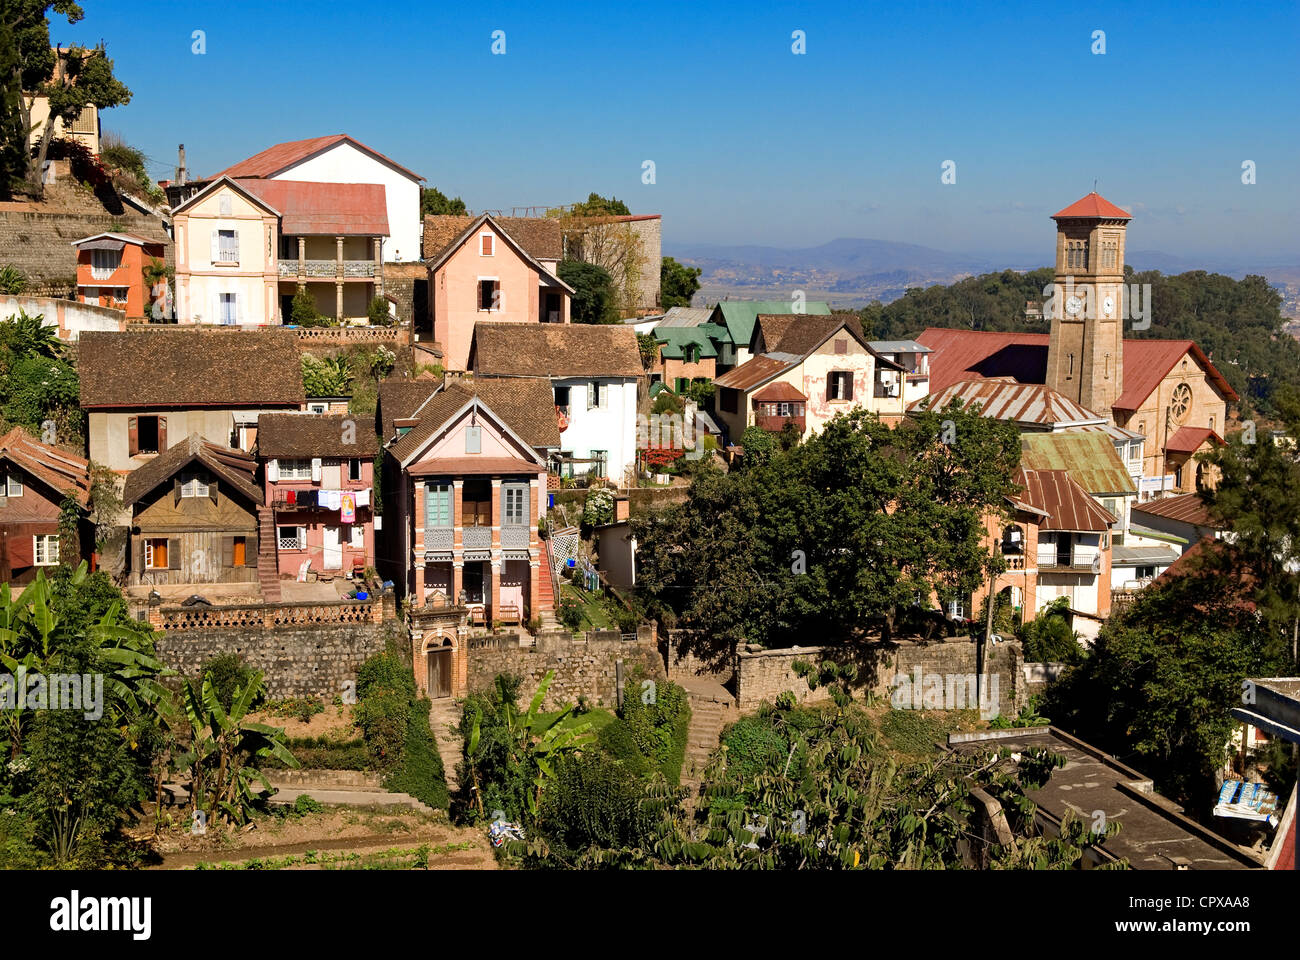 Madagascar, Analamanga region, Antananarivo (Tananarive or Tana), historical quarter of Andahalo on the height of the city Stock Photo